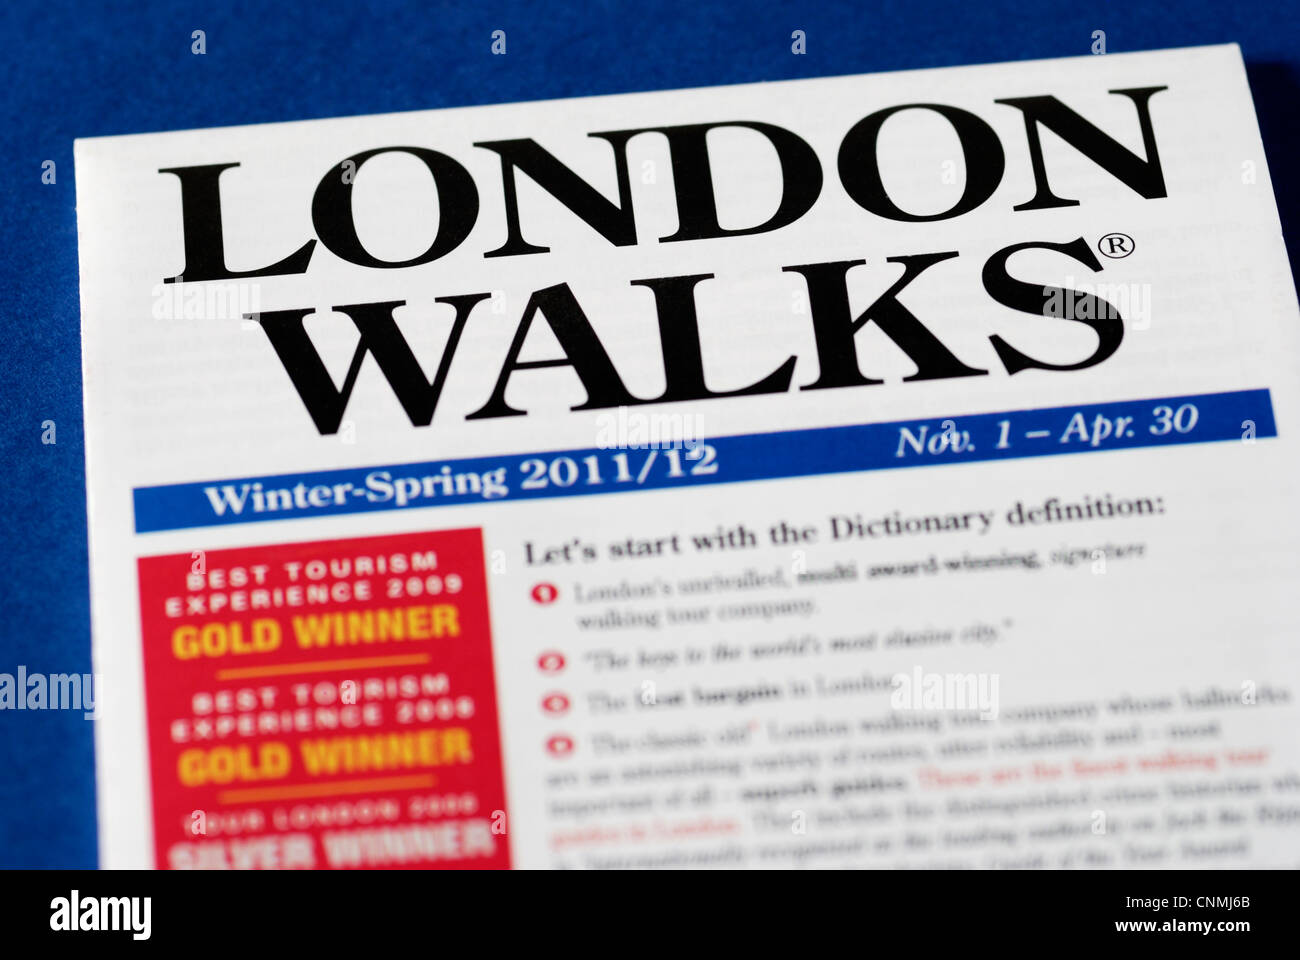 Londres ' ' Promenades marche urbaine tour company brochure Banque D'Images